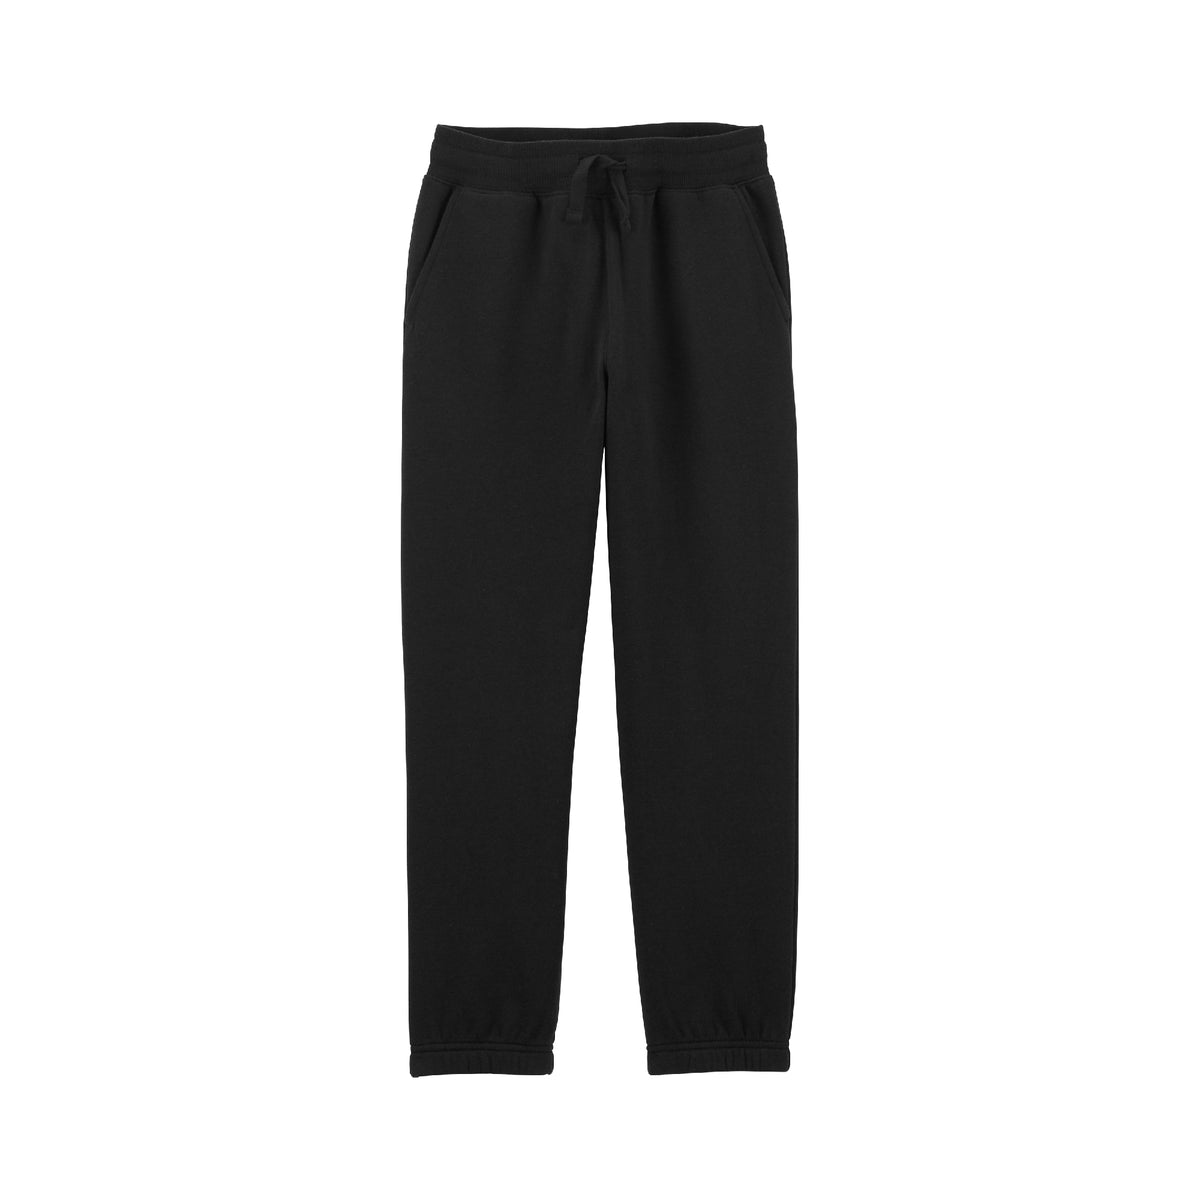 OshKosh black comfortable pants (5-8)